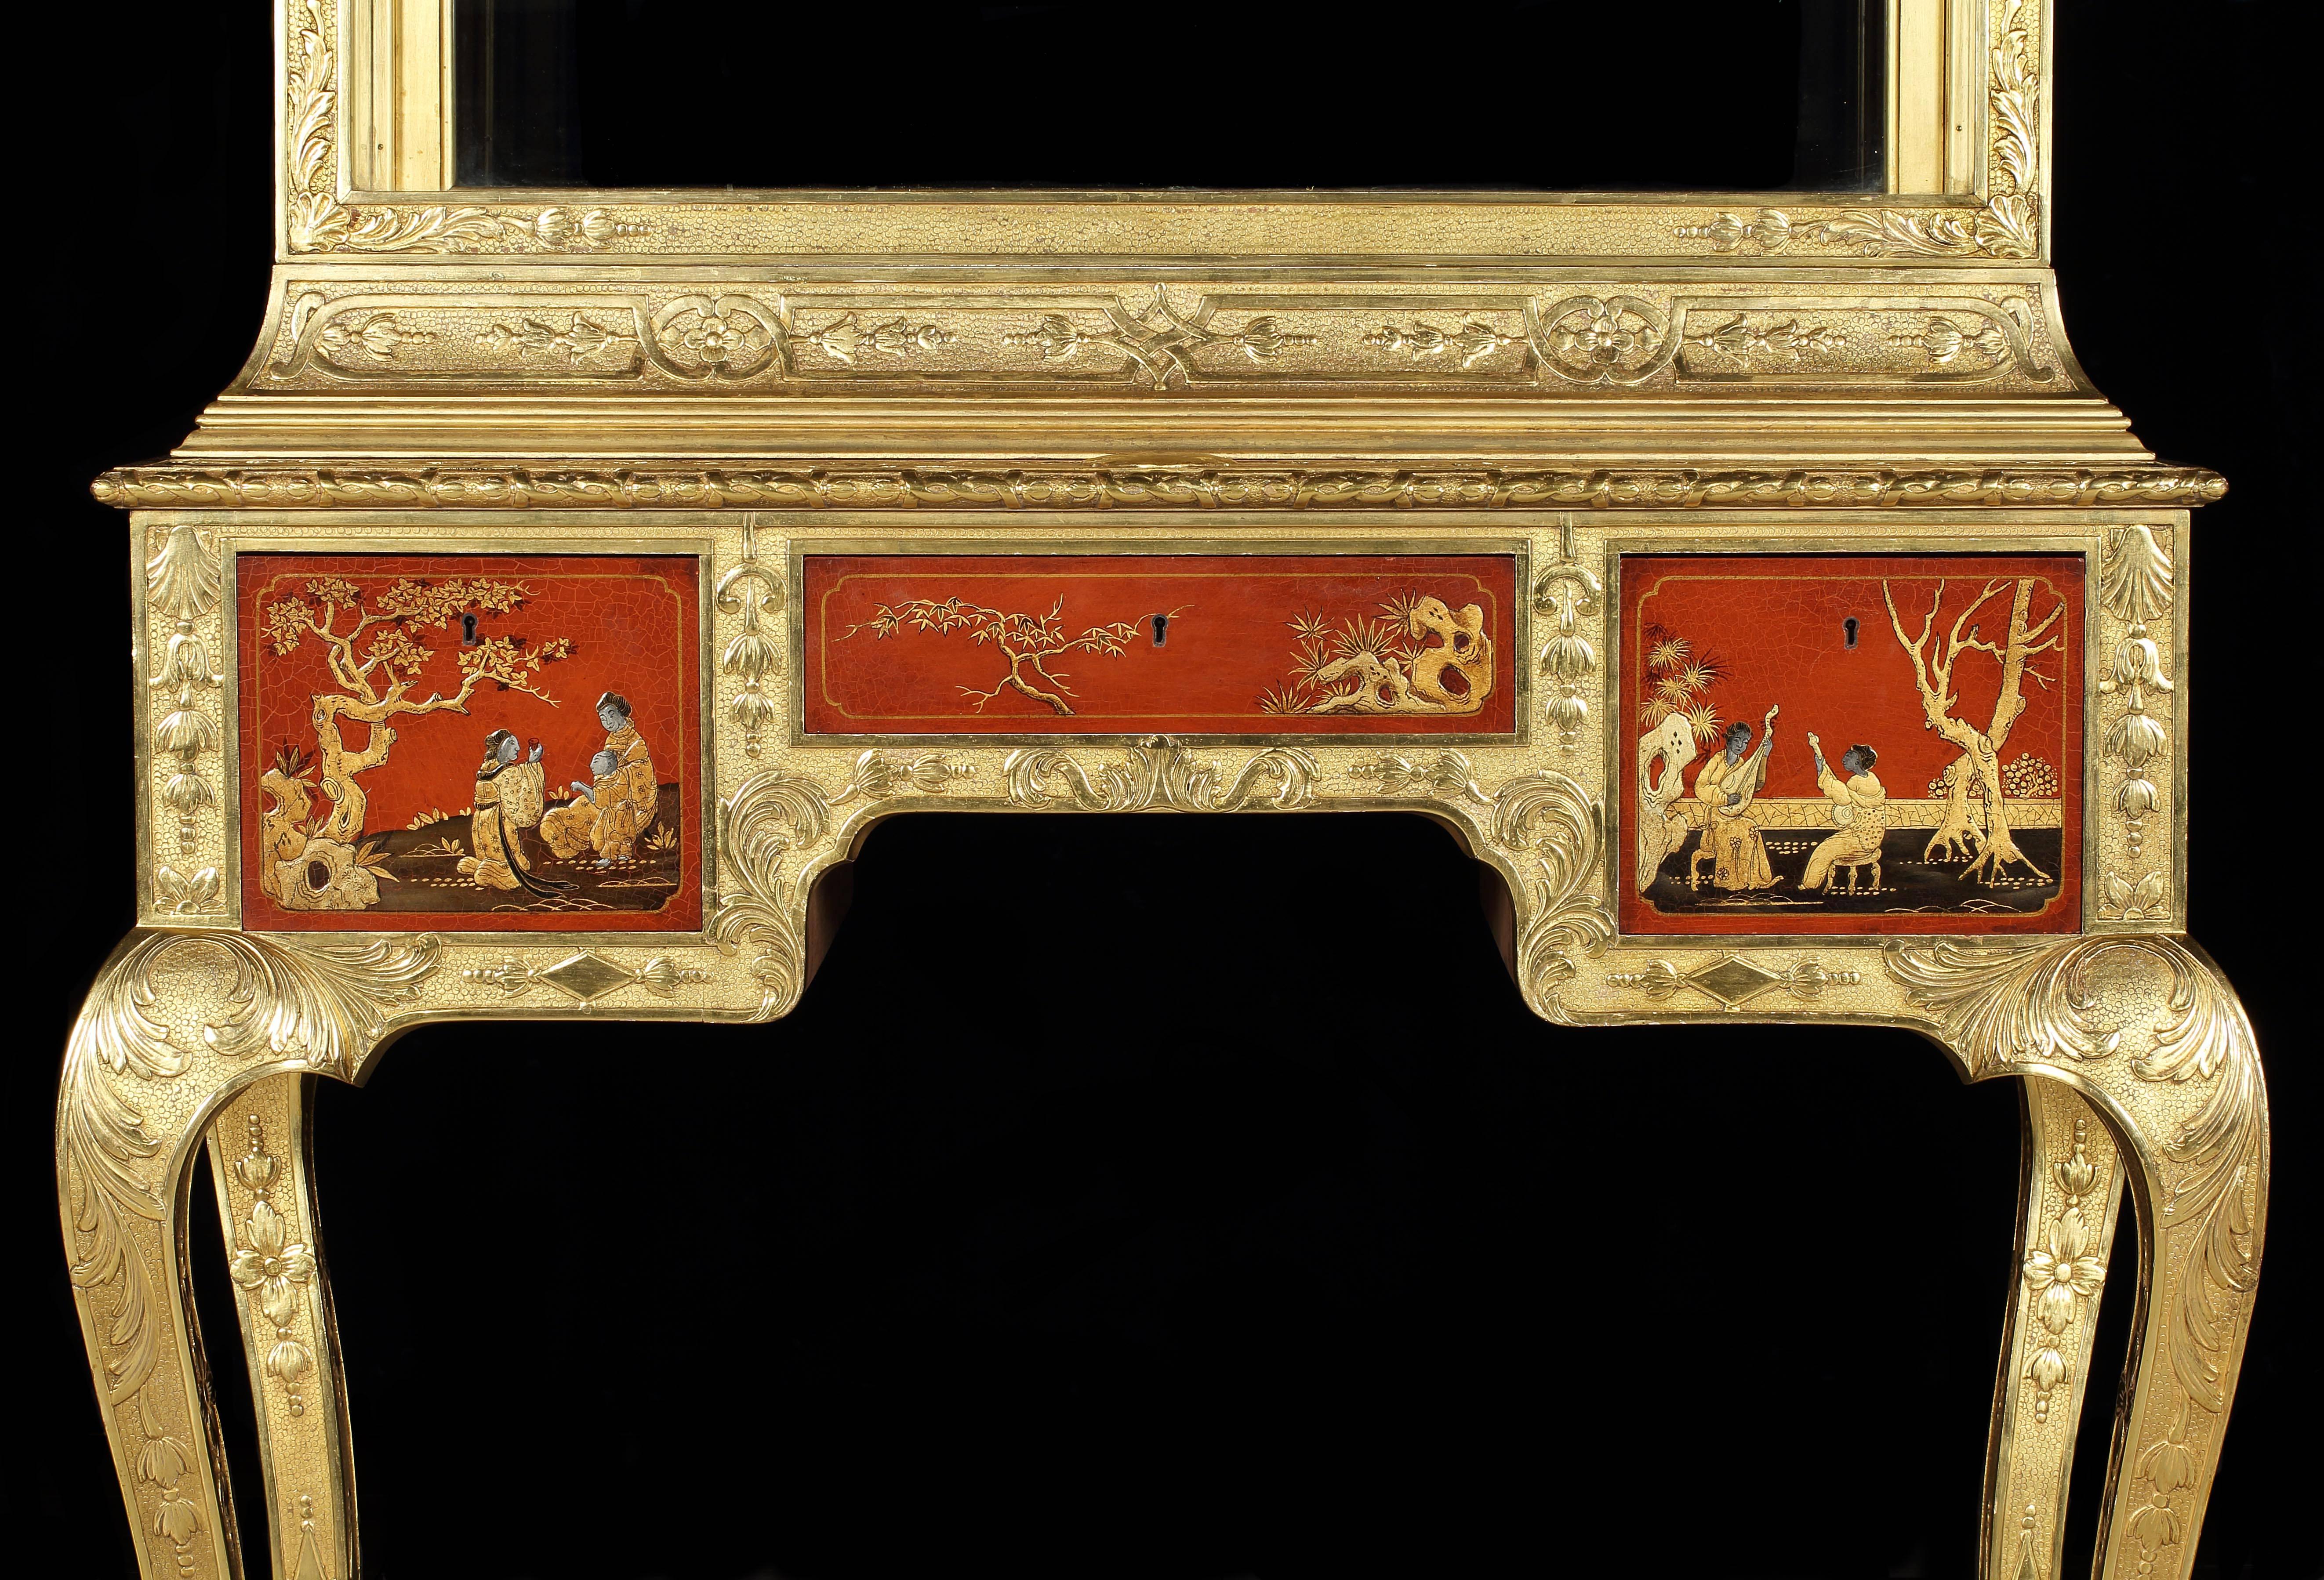 Ein Paar Vitrinen im frühen georgianischen Stil, wahrscheinlich von Lengyon und Morant

Gold- und Gessoarbeiten, verziert mit Entrelacs, Riemenwerk, Muscheln und Akanthus; teilweise japoniert; auf vier dreifüßigen Cabriole-Beinen stehend; drei